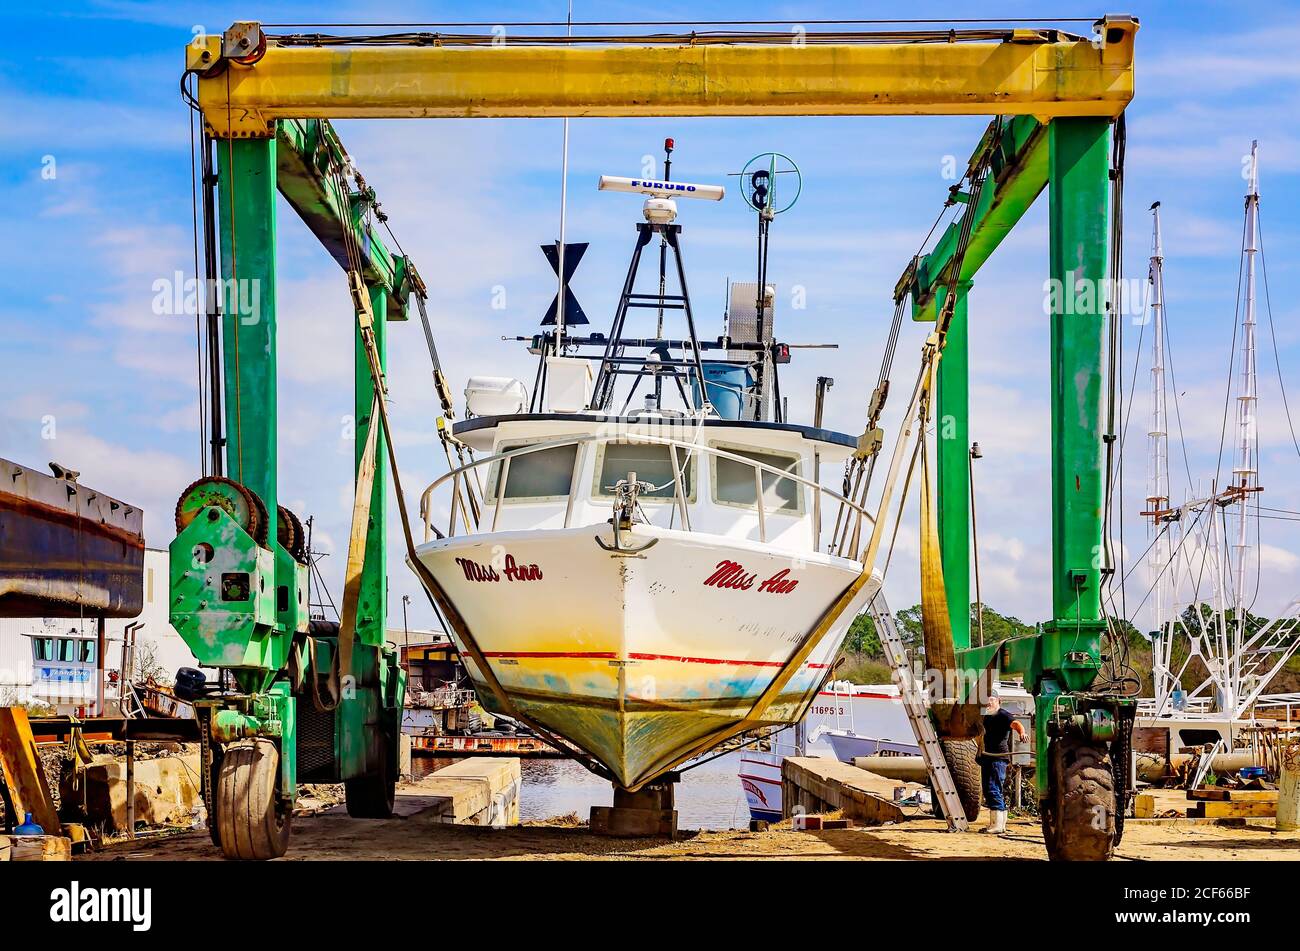 Un bateau à crevettes est hissé dans l'air alors qu'il est en cale sèche pour réparation dans un chantier naval local, le 17 février 2018, à Bayou la Berre, Alabama. Banque D'Images